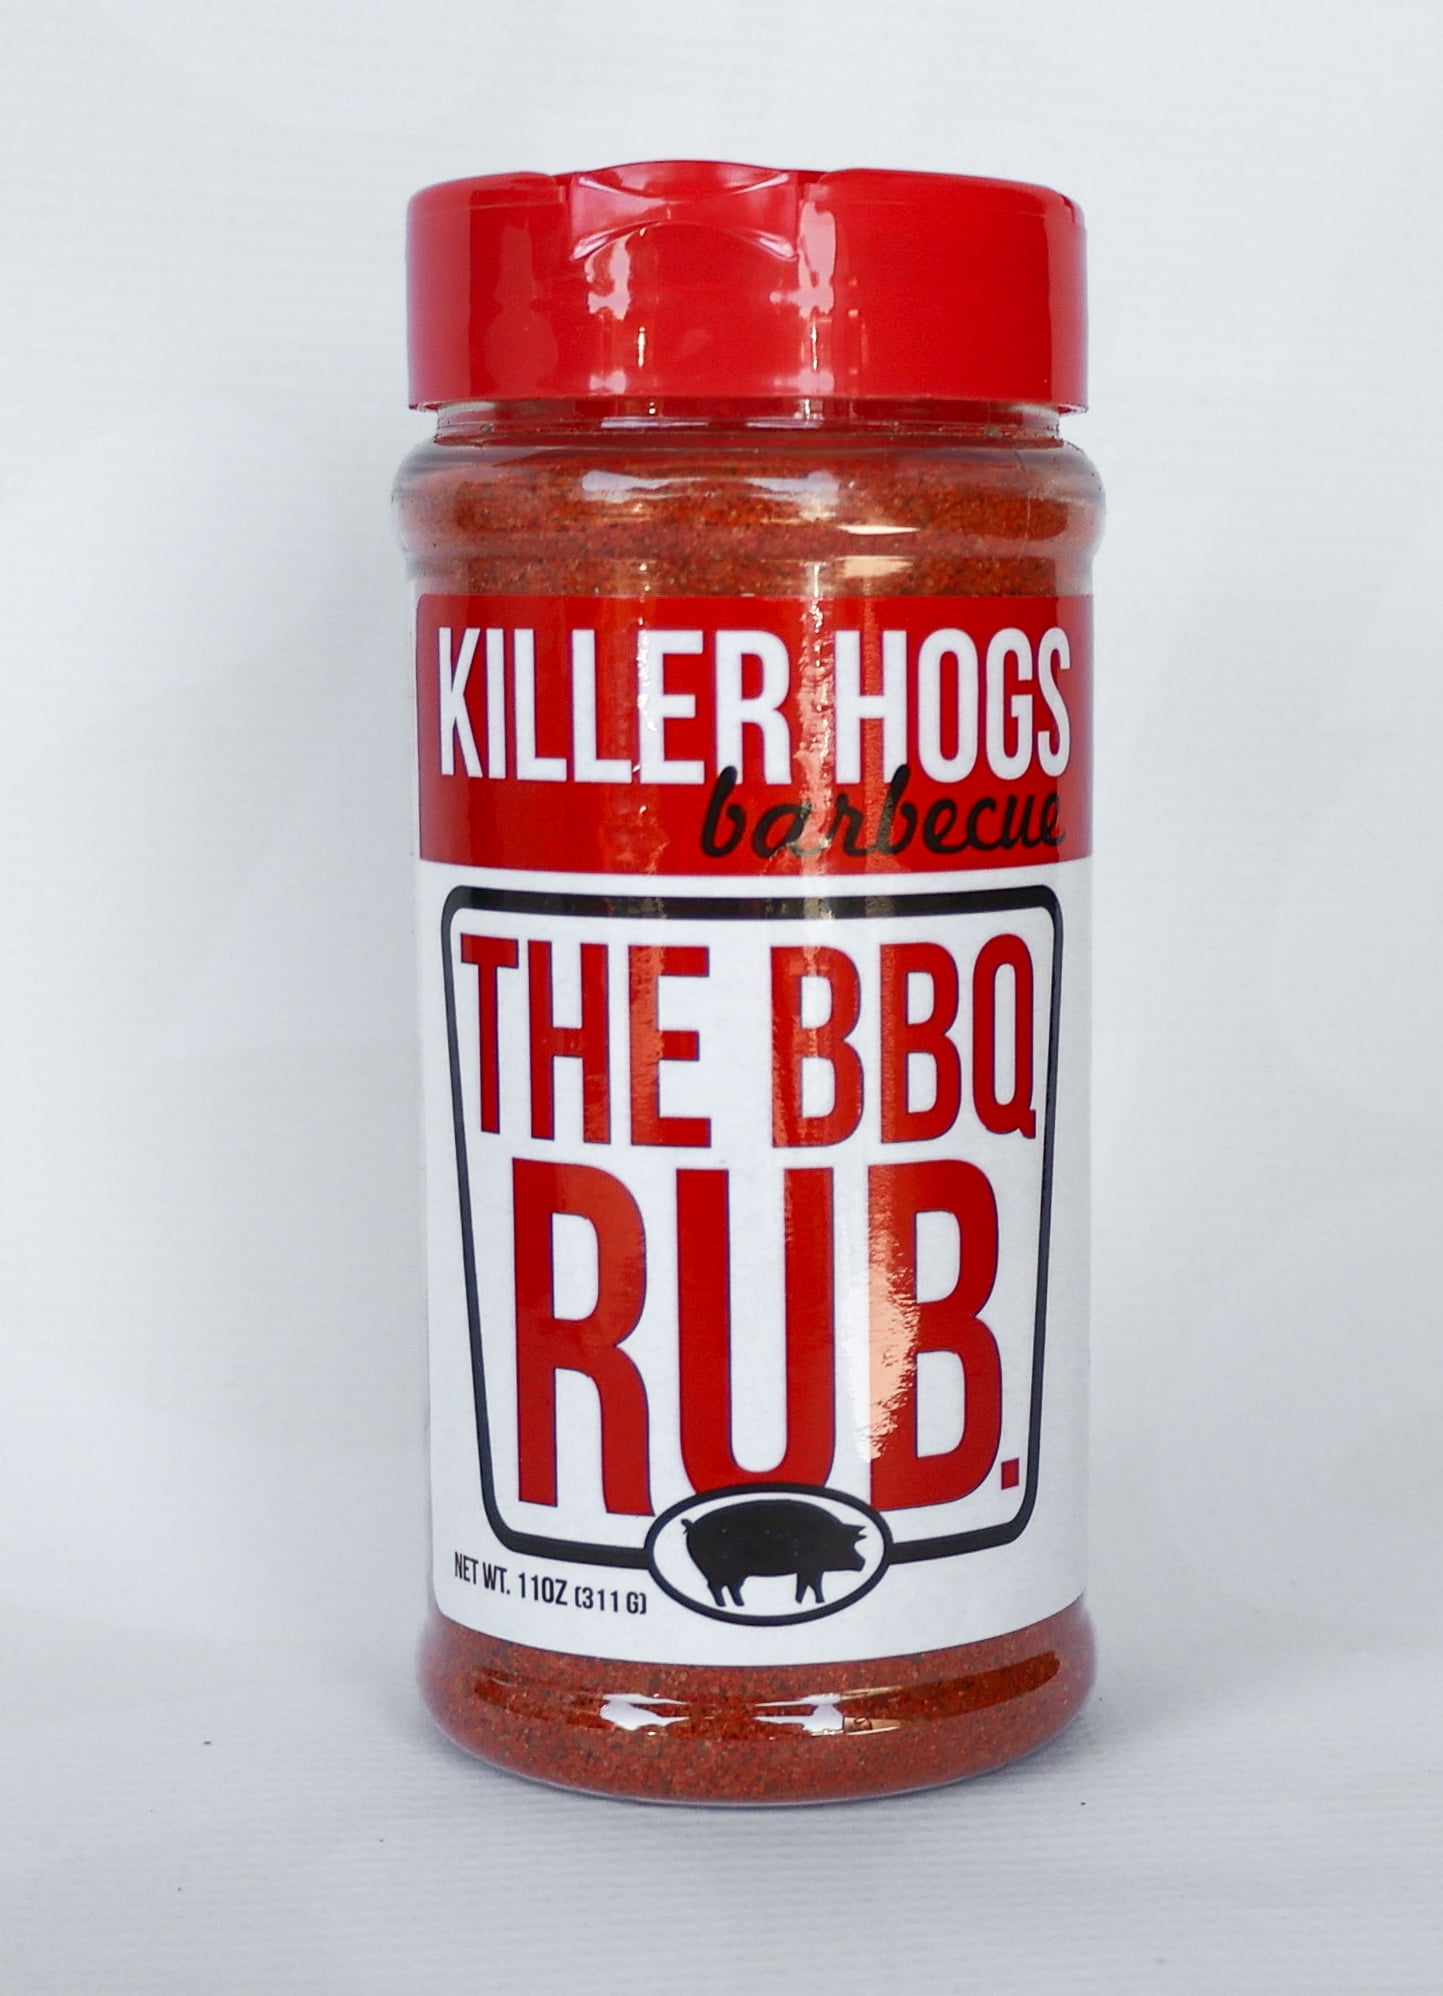 Killer Hogs The BBQ Rub 11 oz